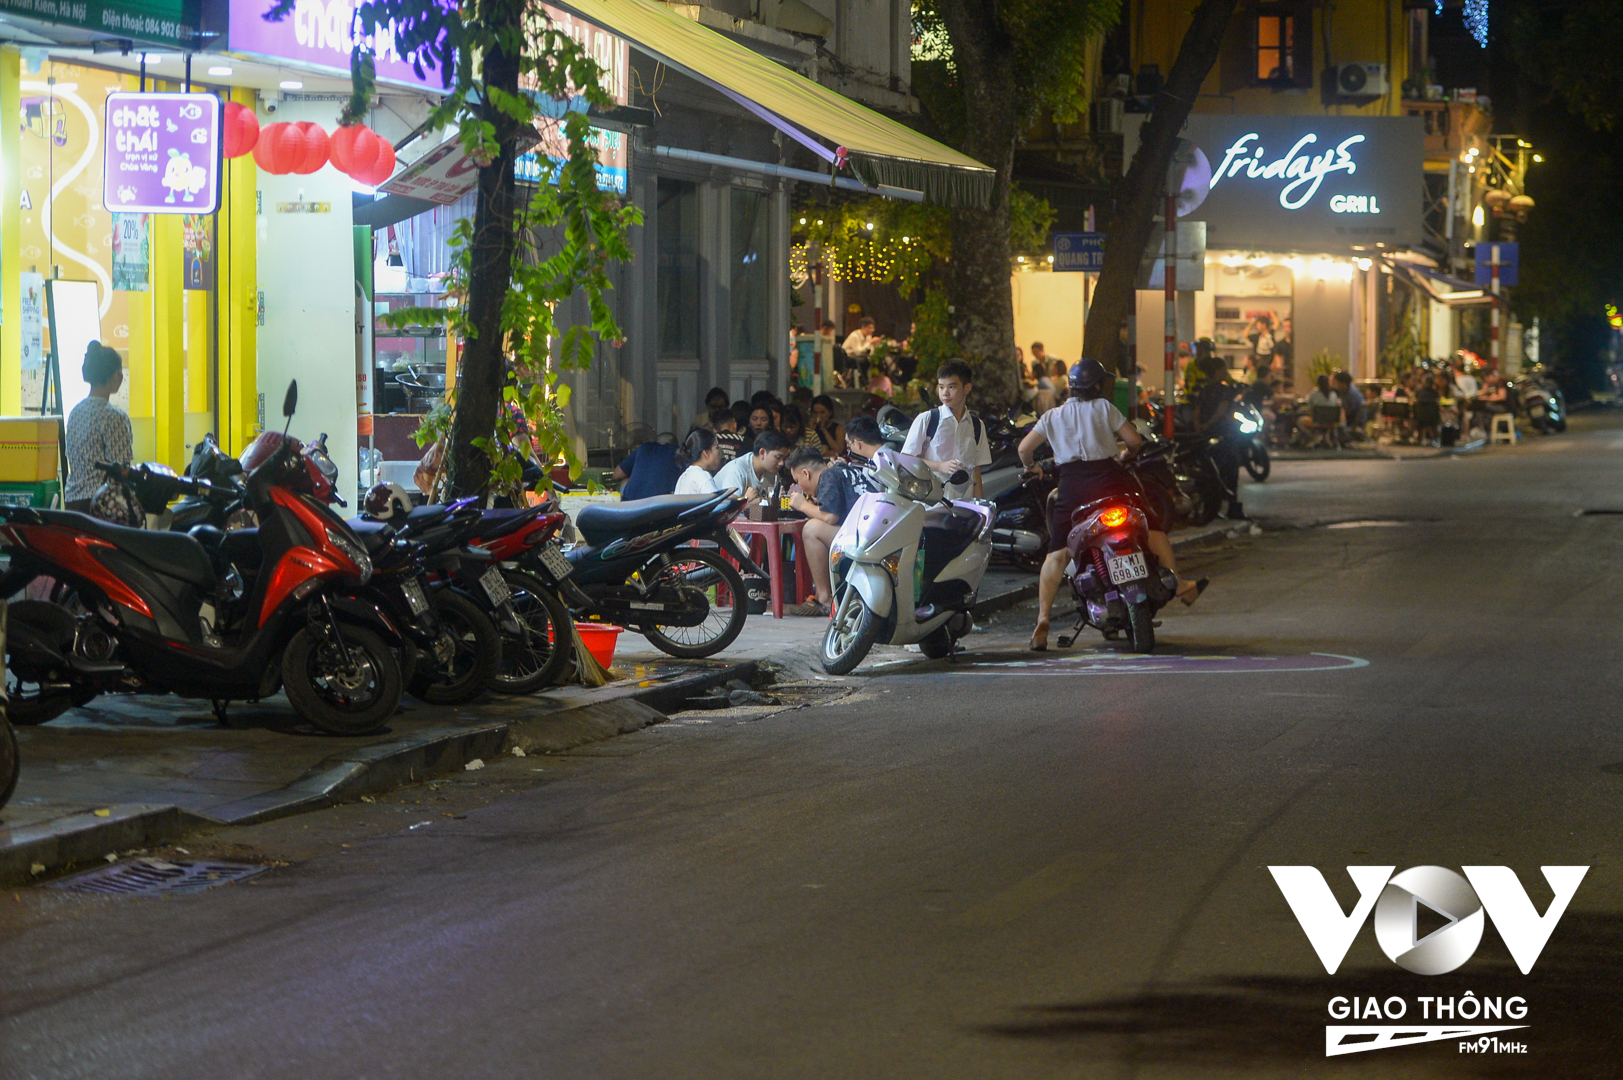 Vào buổi tối, tình hình vi phạm trật tự đô thị còn diễn ra nhức nhối hơn. Trong ảnh là một góc vỉa hè nằm ở ngã tư Quang Trung - Trần Quốc Toản, phường Trần Hưng Đạo, quận Hoàn Kiếm, Hà Nội.